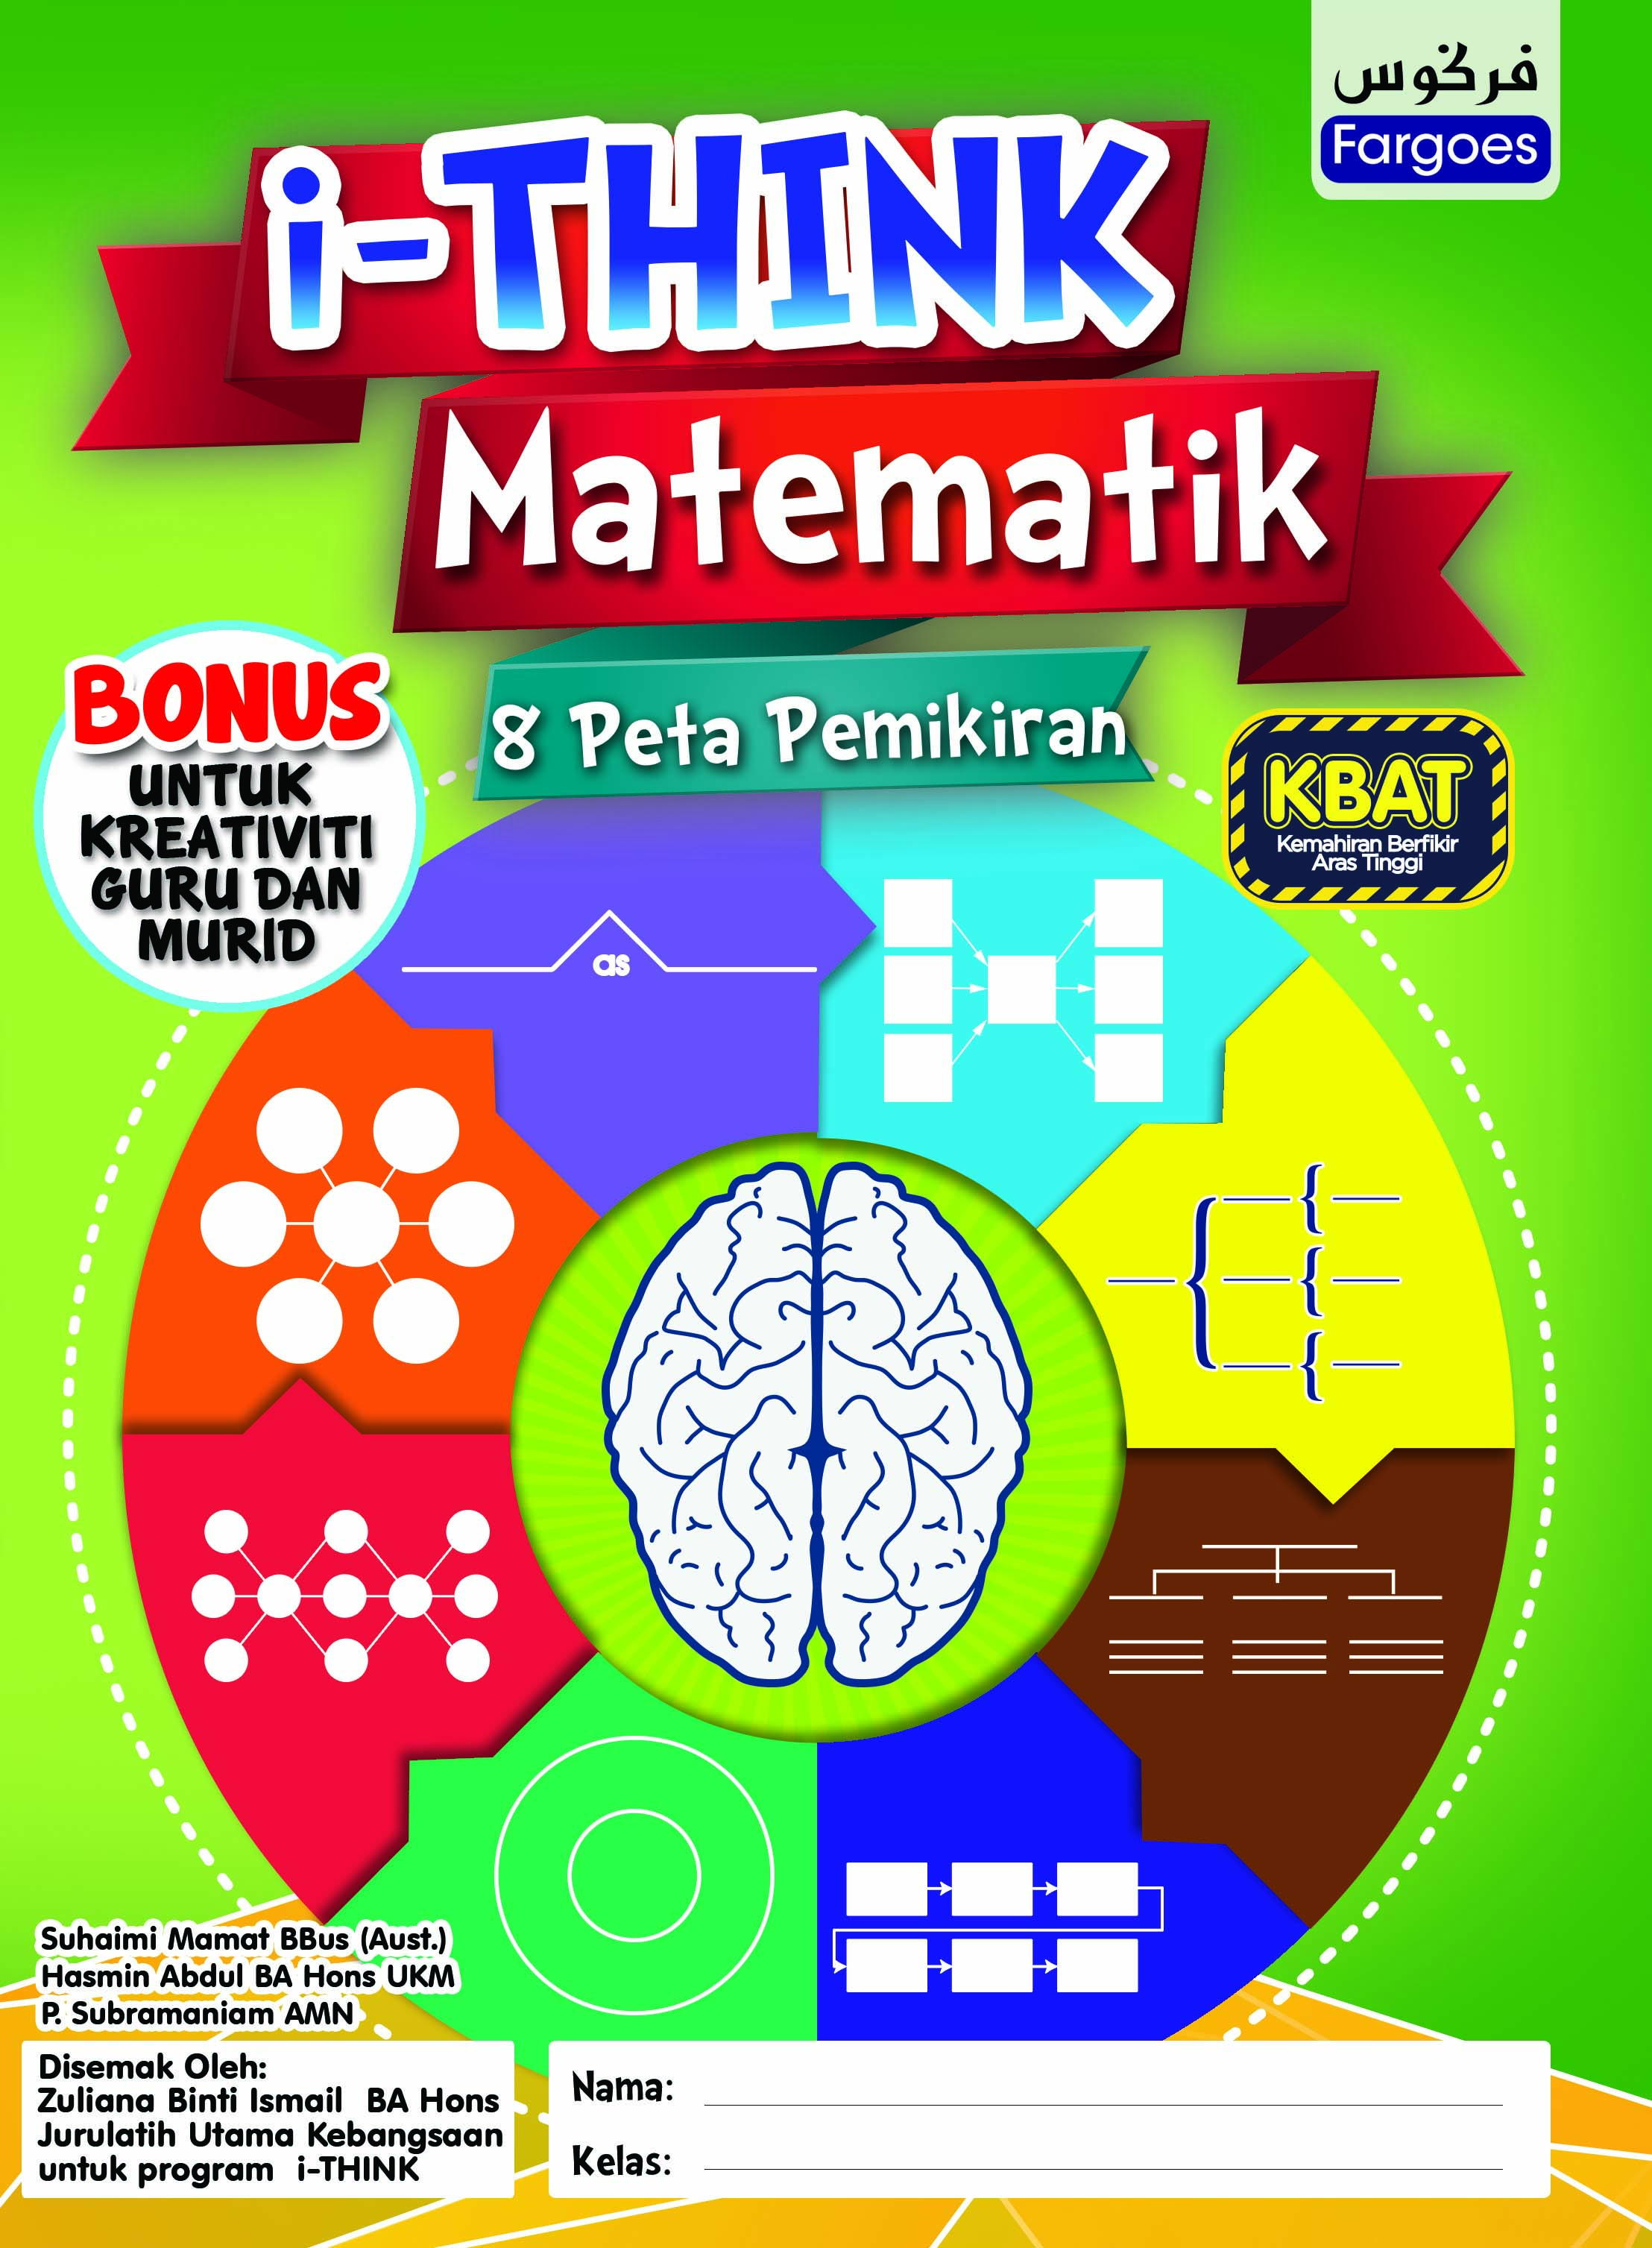 Matematik Fargoes Books Sdn Bhd